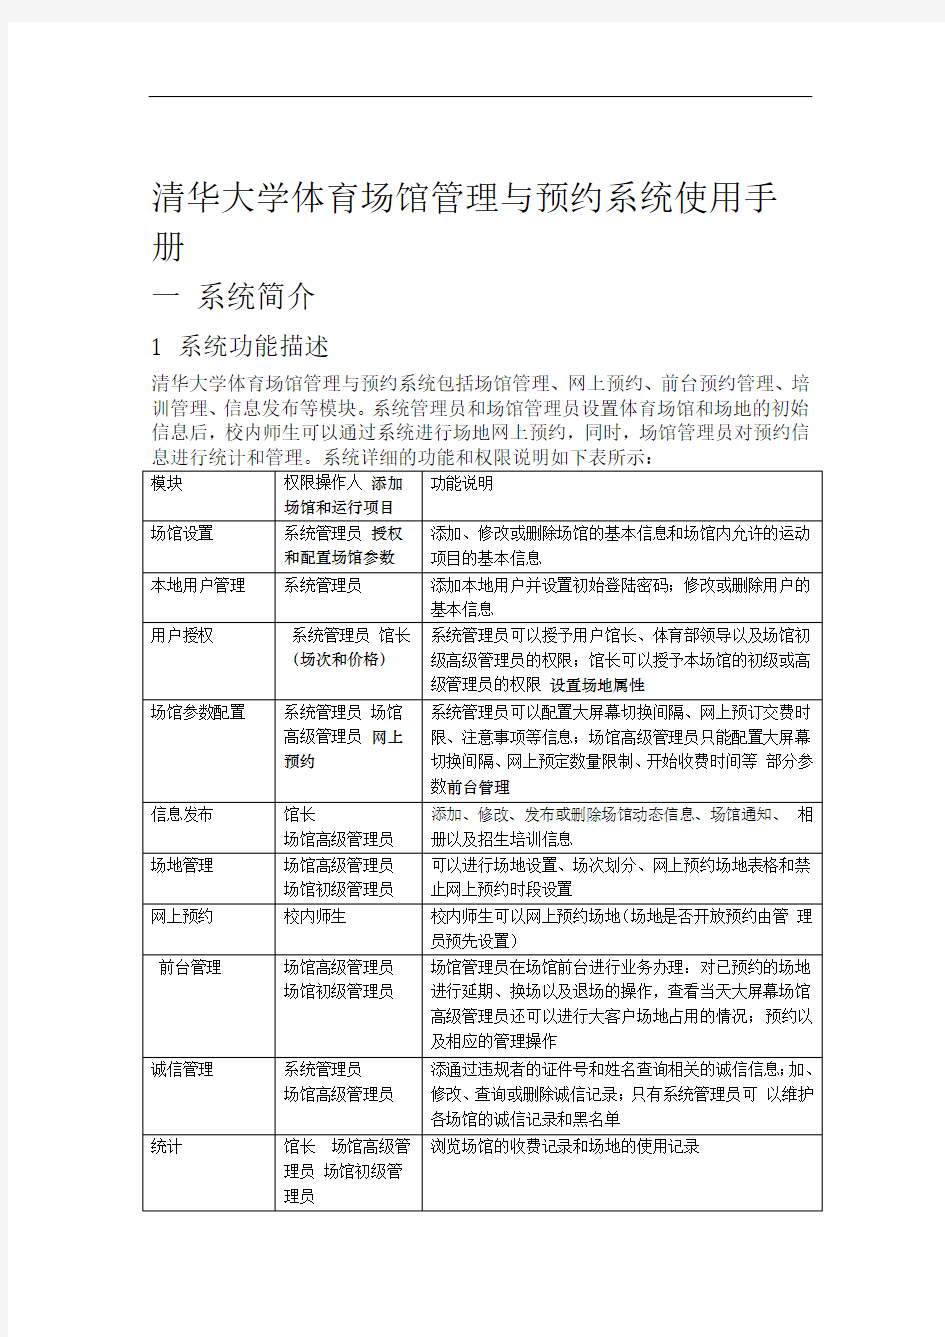 清华大学体育馆管理与网上预约系统-使用手册